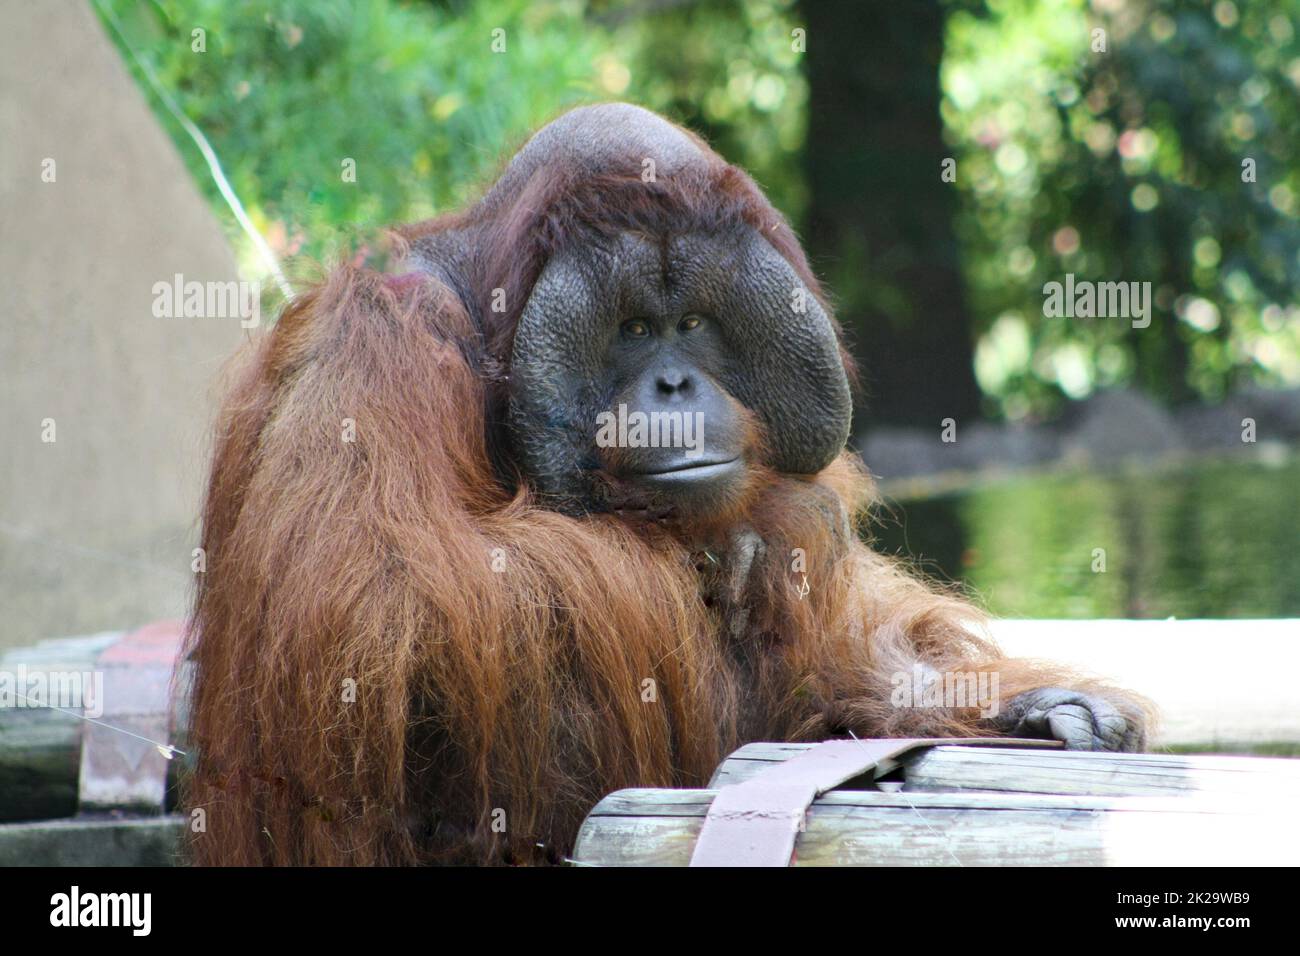 Bornean orangutan Stock Photo